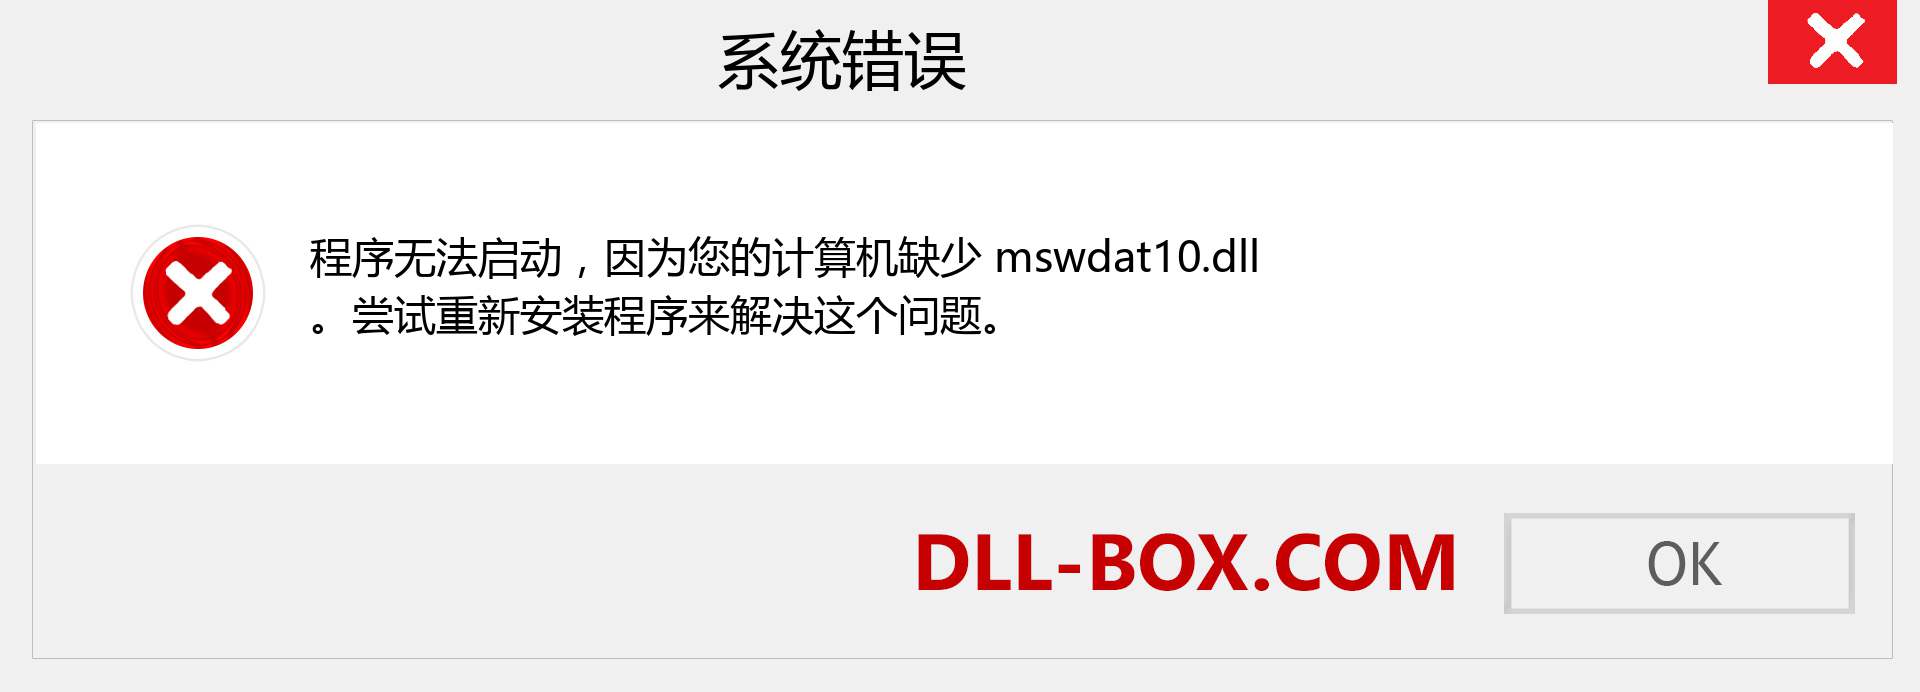 mswdat10.dll 文件丢失？。 适用于 Windows 7、8、10 的下载 - 修复 Windows、照片、图像上的 mswdat10 dll 丢失错误